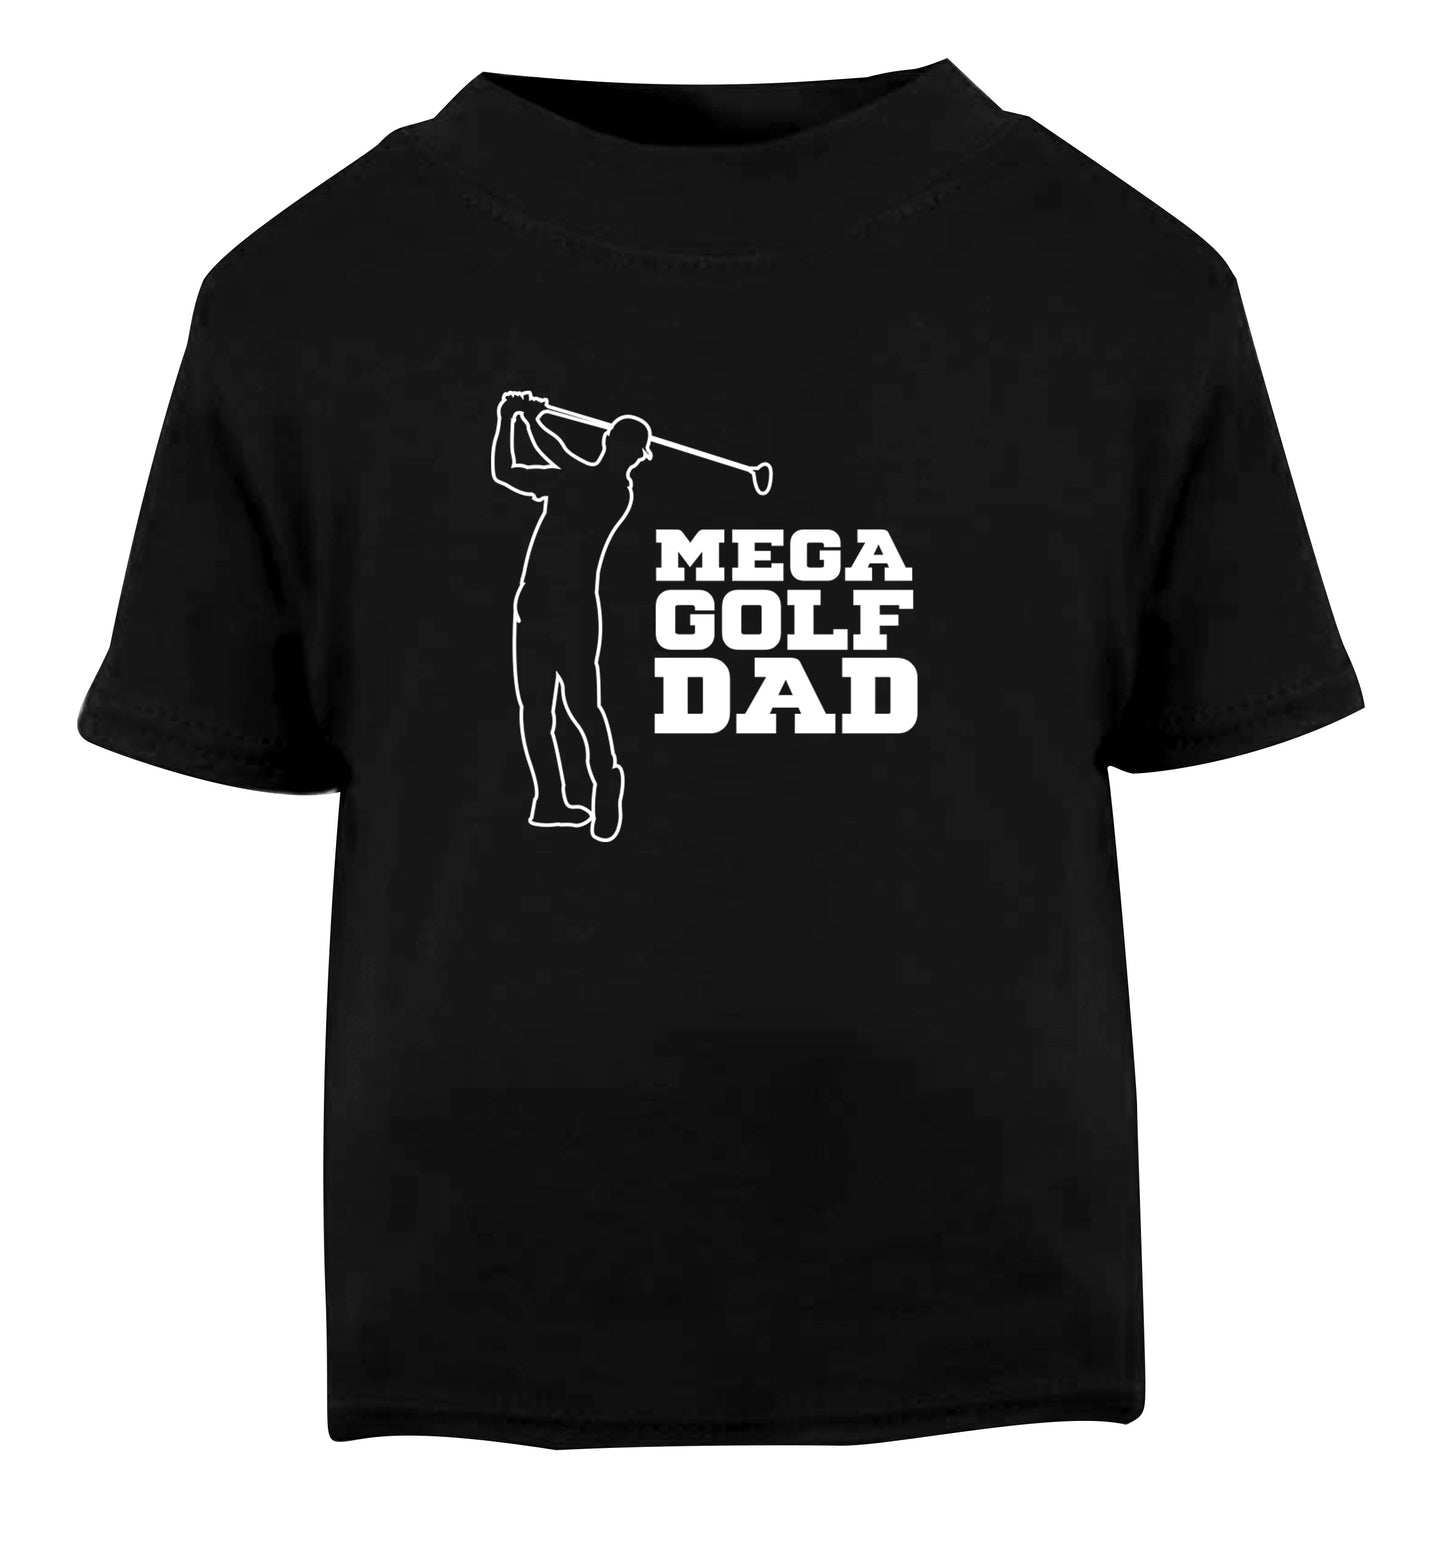 Mega golfing dad Black Baby Toddler Tshirt 2 years